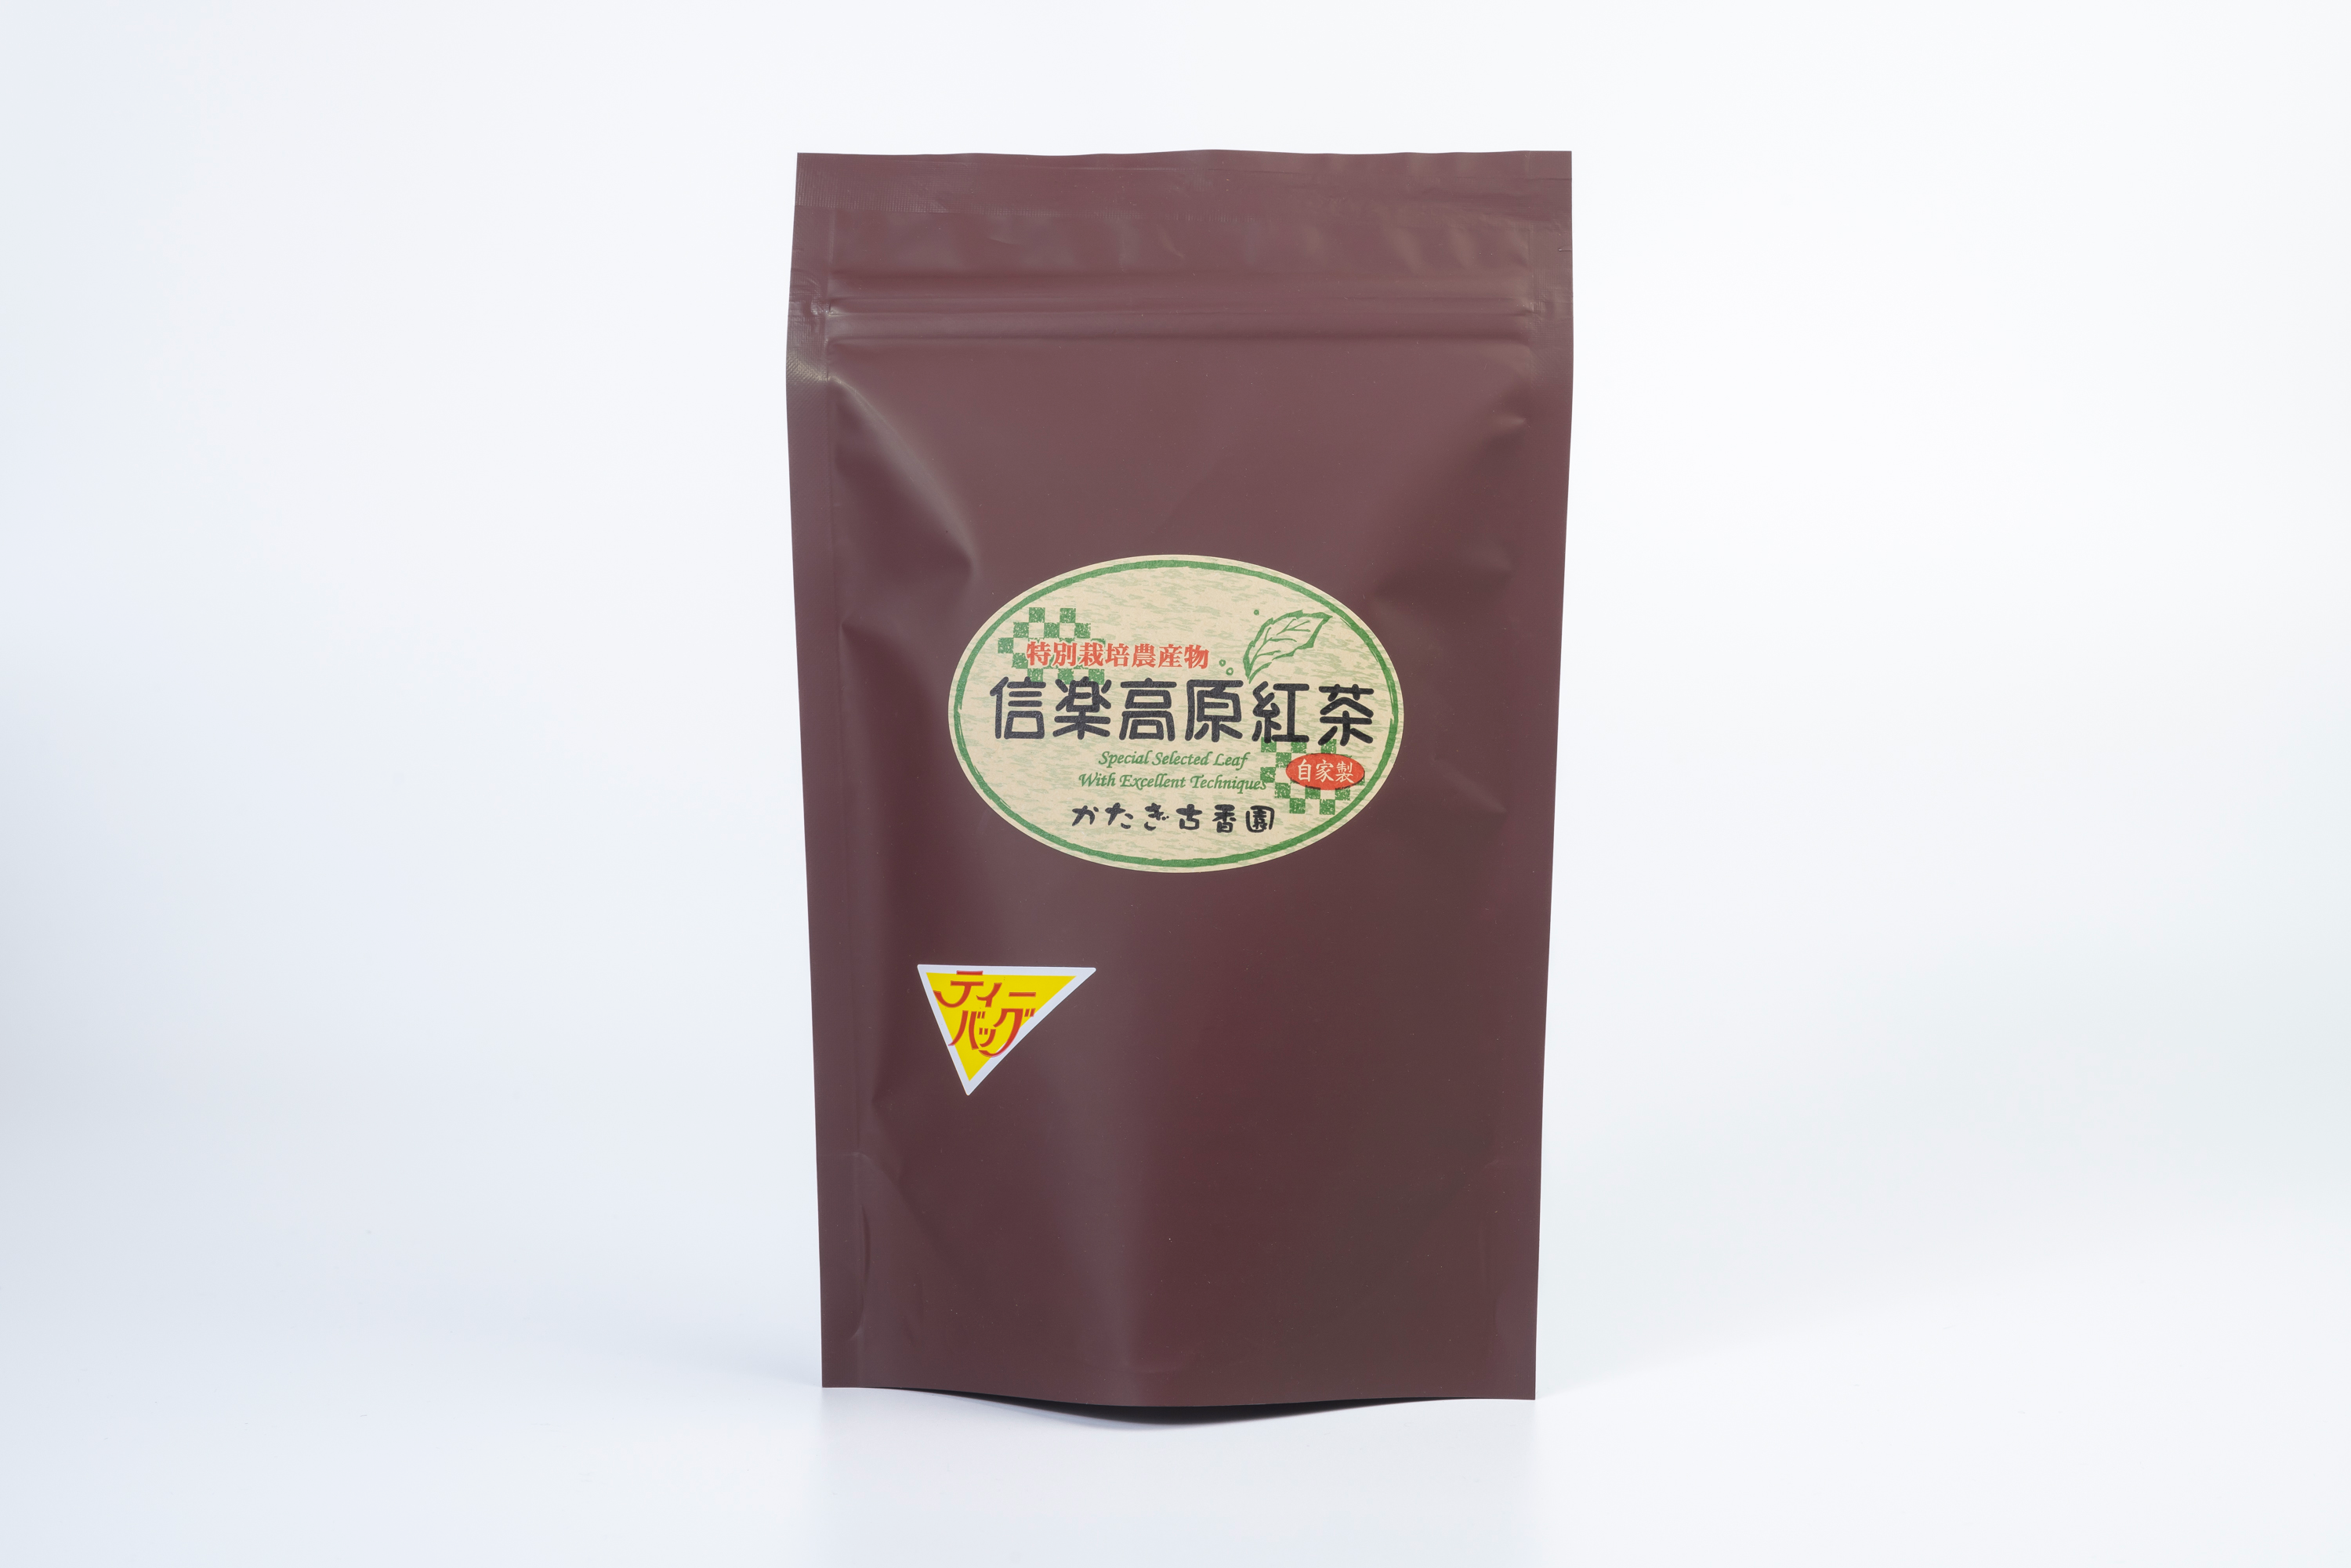 信楽高原紅茶（20パック入り）特別栽培農産物 農薬不使用栽培